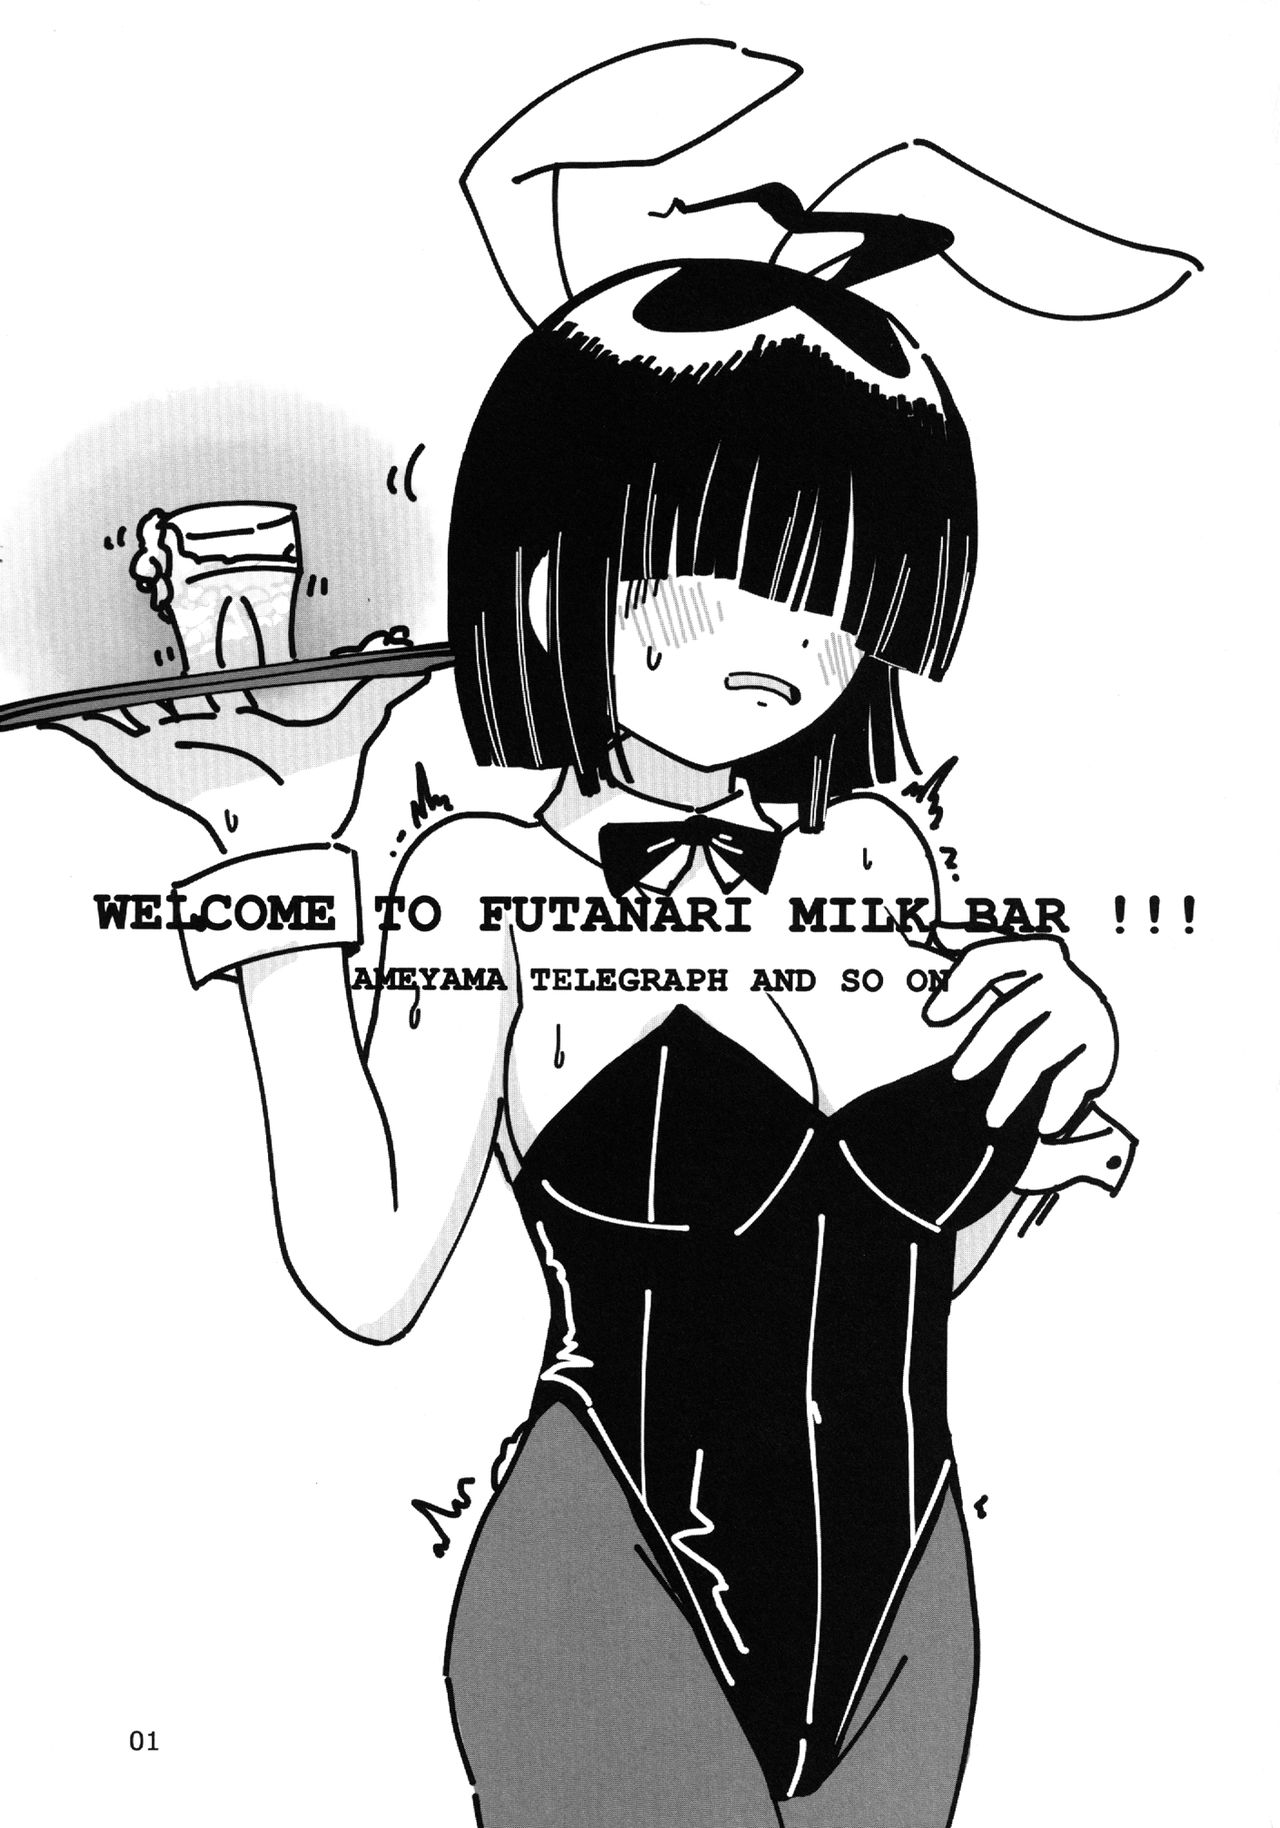 [Ameyama Telegraph (Ameyama Denshin)] WELCOME TO FUTANARI MILK BAR!!! [Digital] [雨山電信社 (雨山電信)] WELCOME TO FUTANARI MILK BAR!!! [DL版]